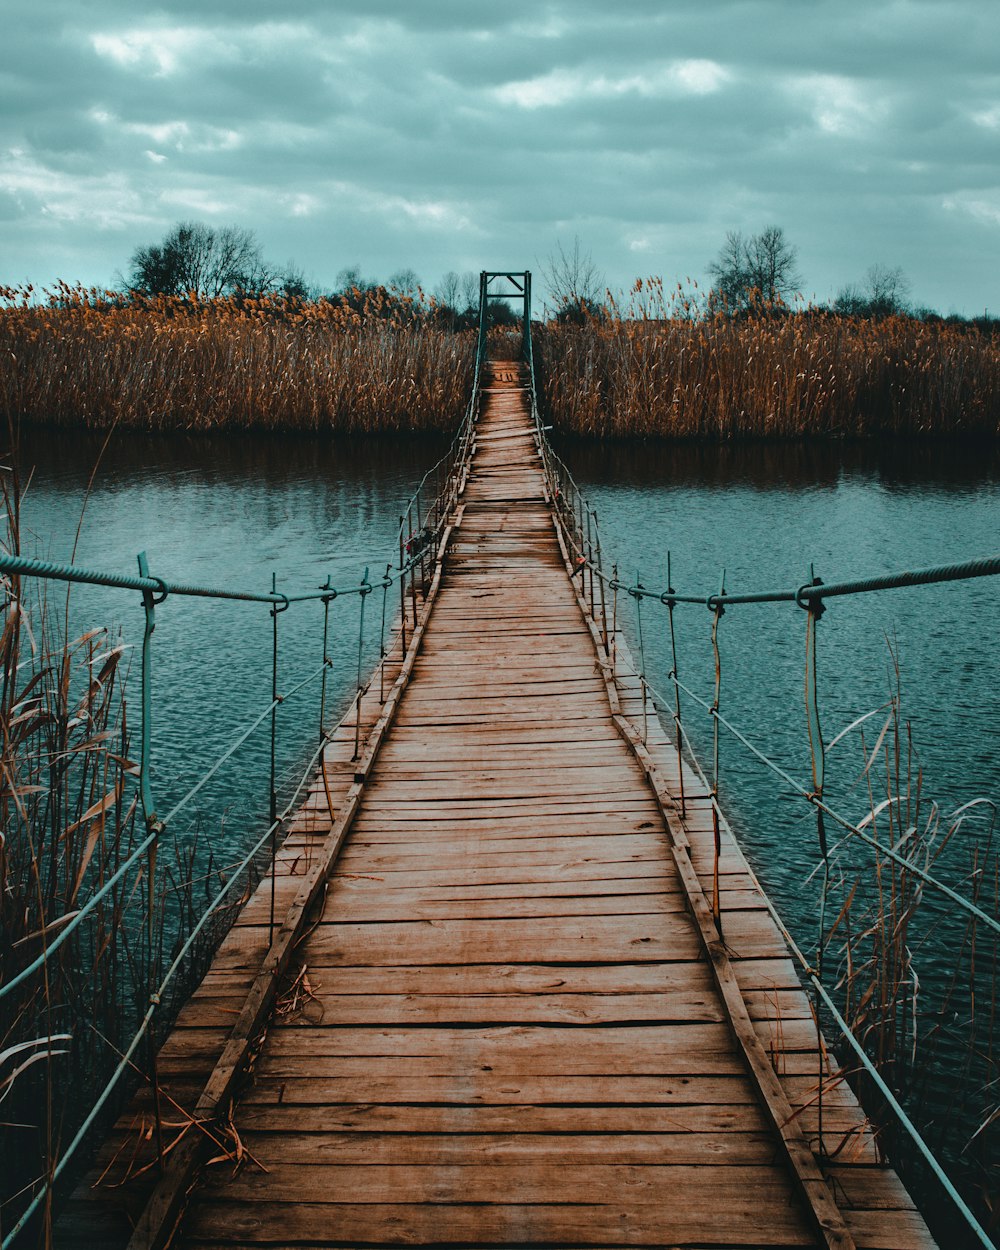 brown wooden bridge over body of water